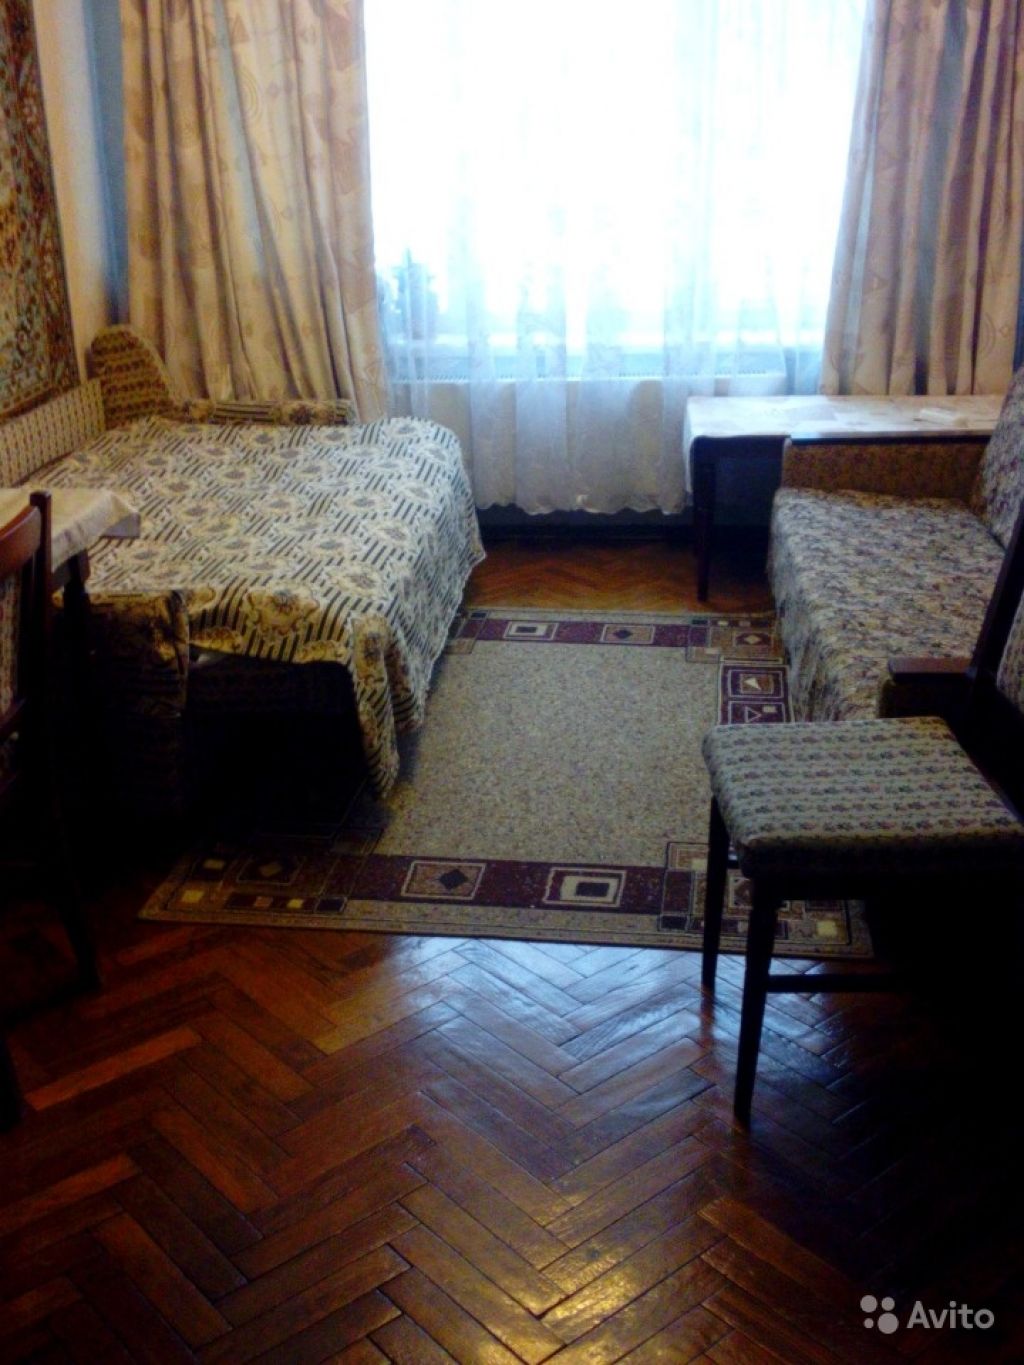 Сдам комнату Комната 15 м² в 2-к квартире на 1 этаже 5-этажного панельного дома в Москве. Фото 1